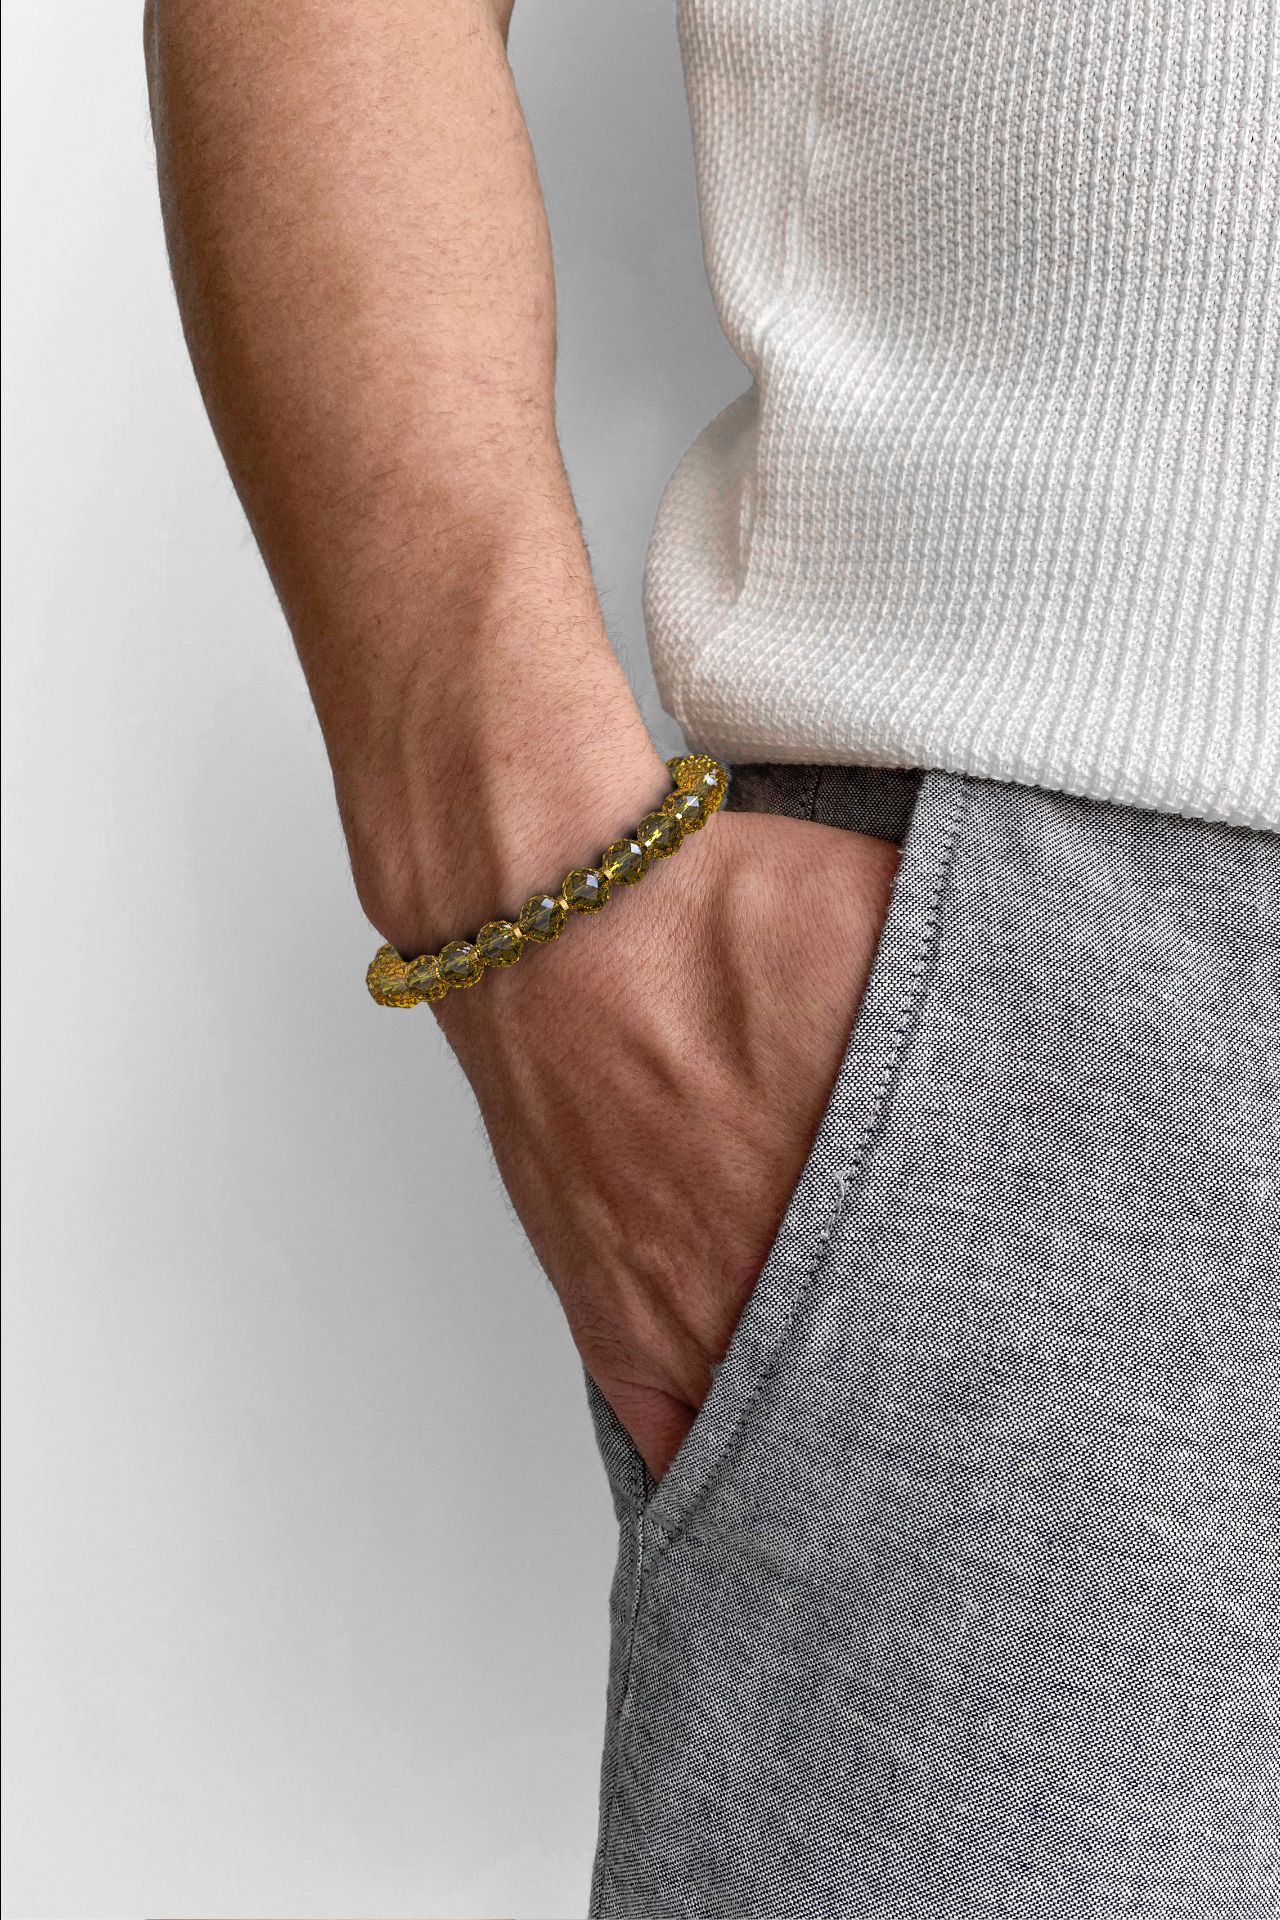 Citrine Bracelet | Faceted Beads